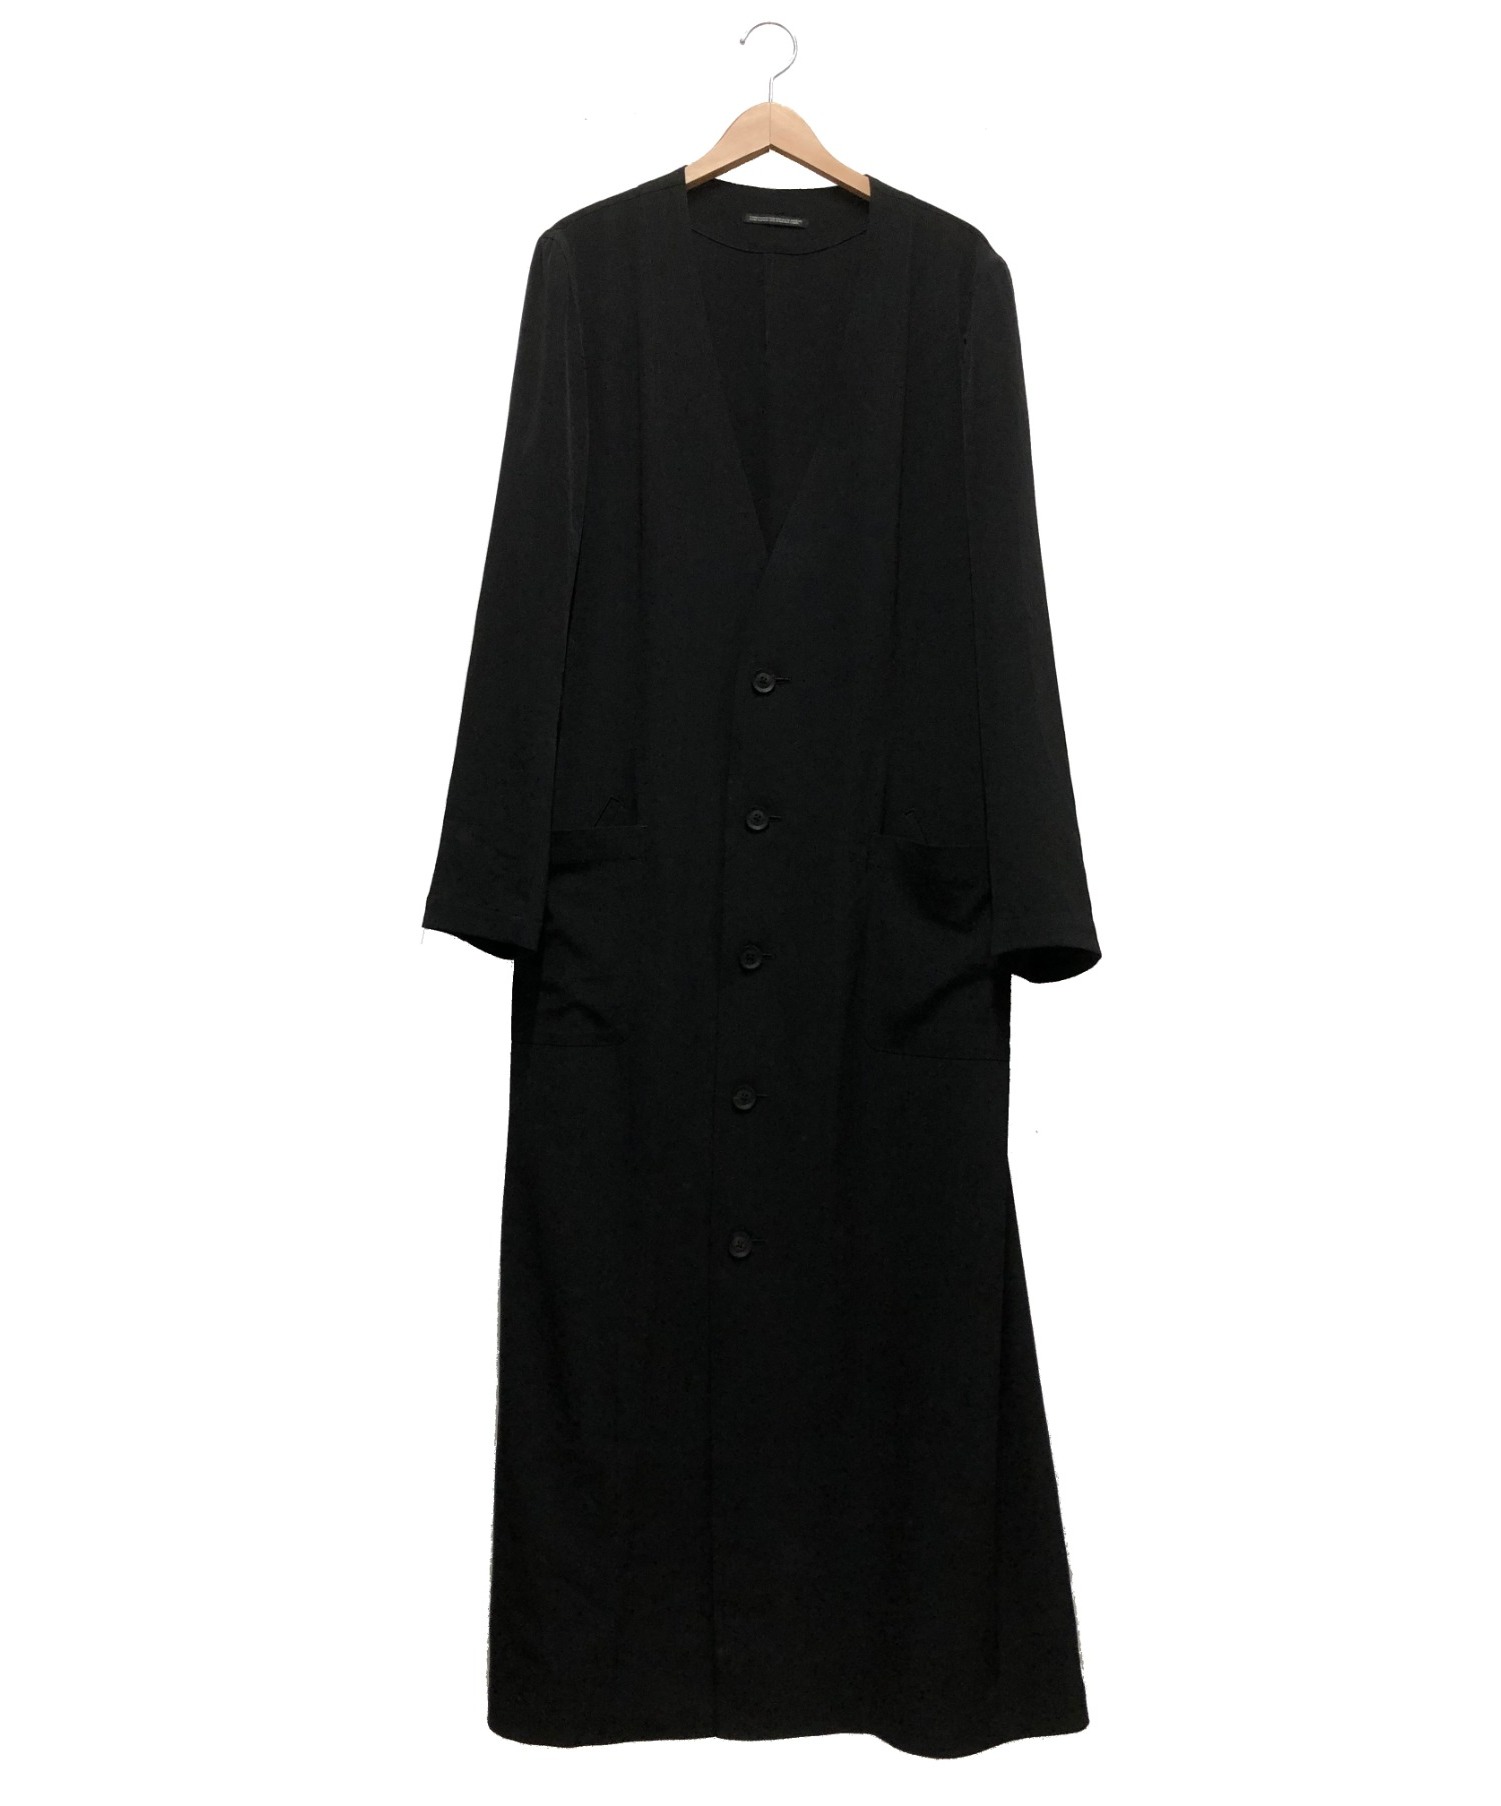 Yohji Yamamoto pour homme (ヨウジヤマモトプールオム) ノーカラーロングコート ブラック サイズ:3 20SS  HN-D19-500 I-Hide Piping PK Dress